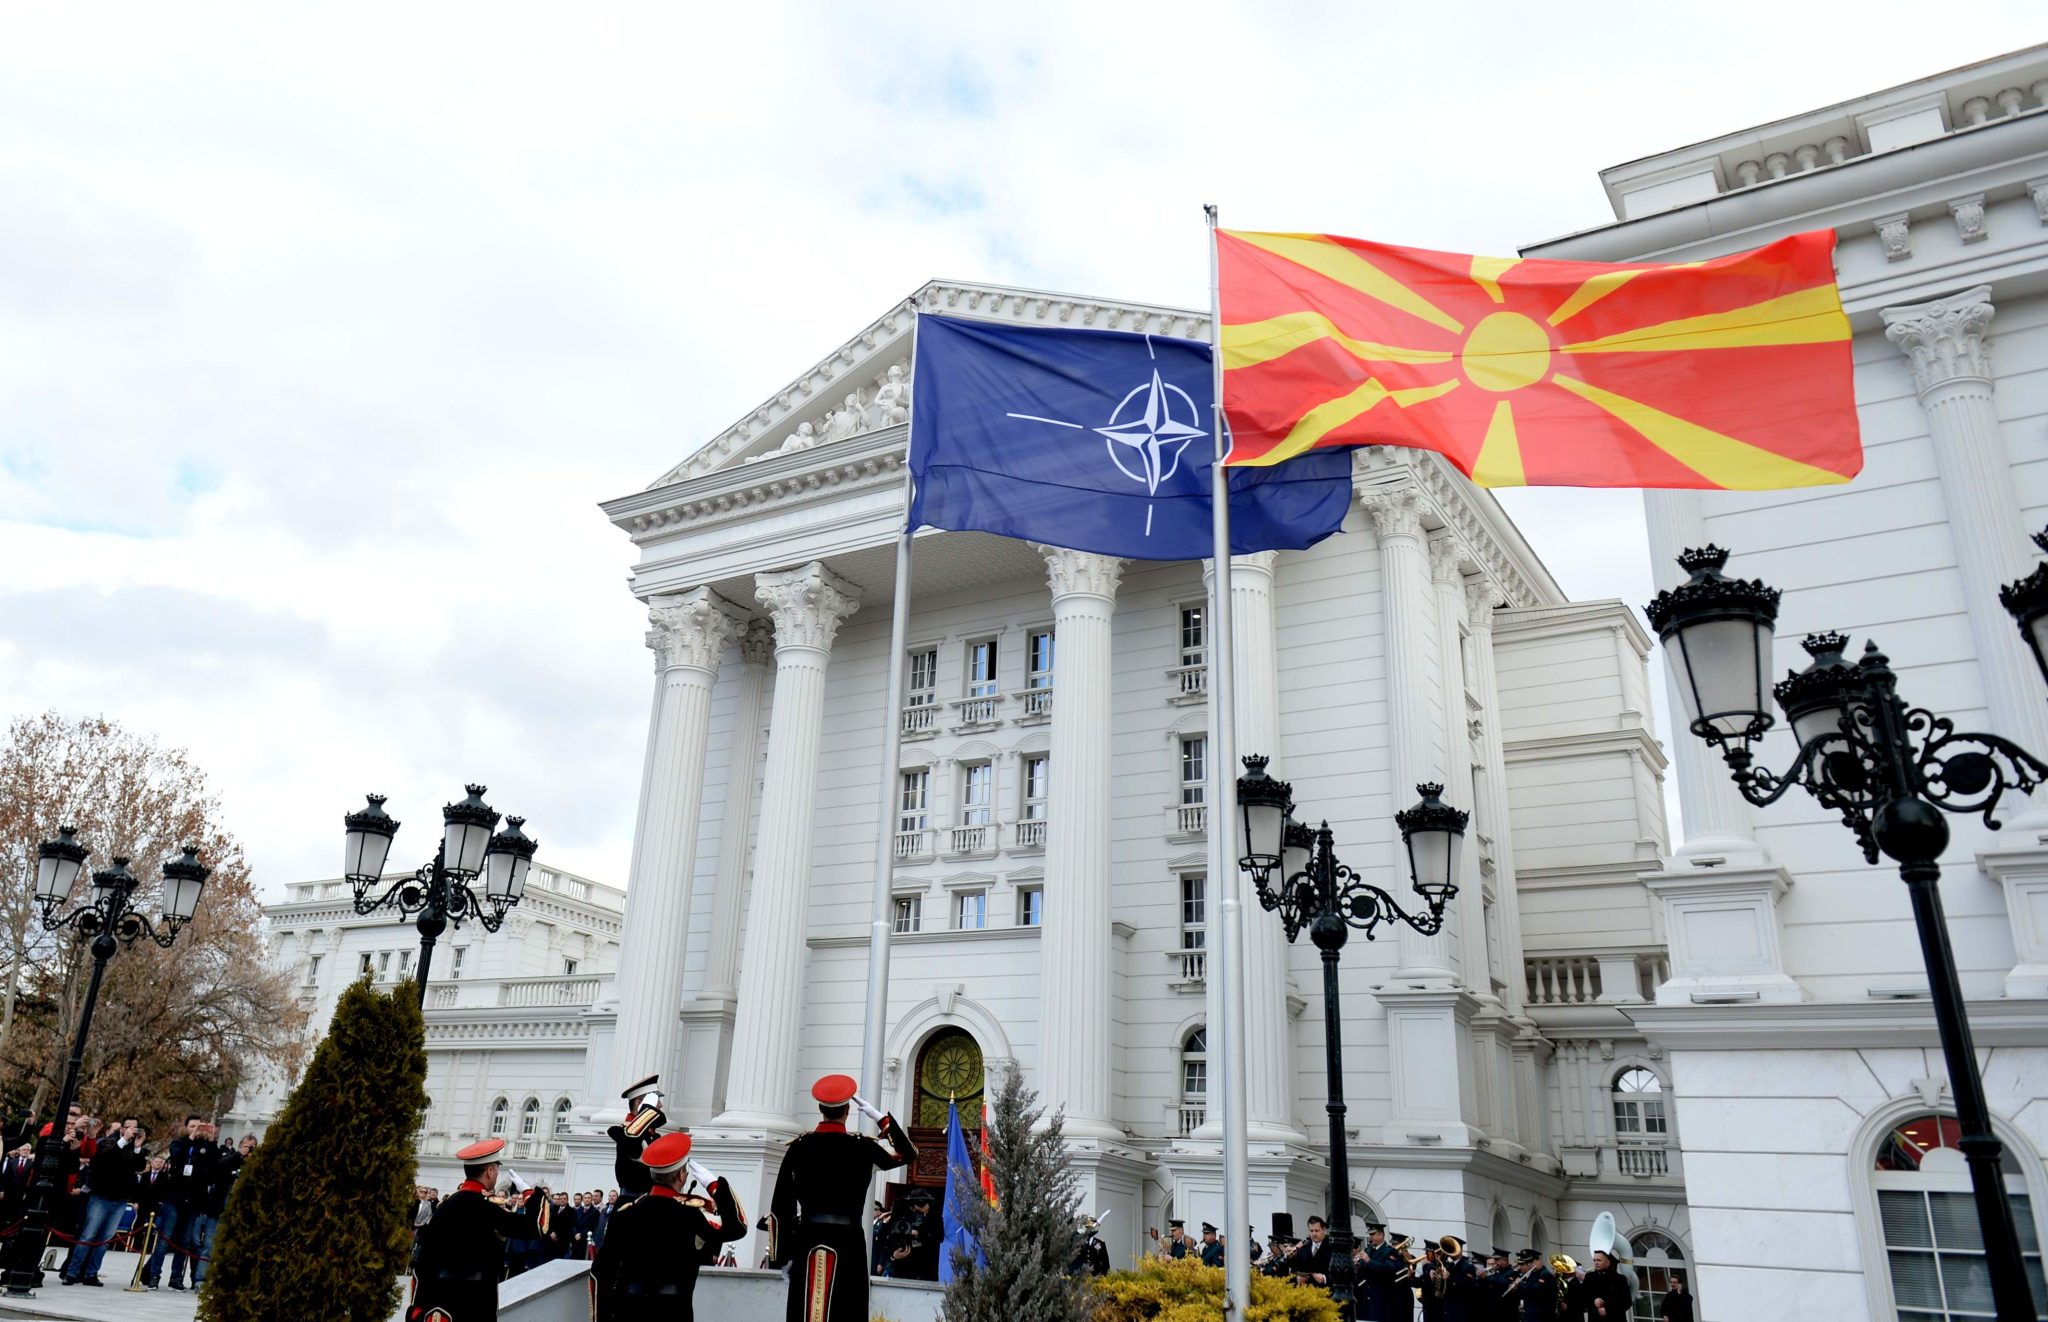 Gjashtë punonjës të Qeverisë qëndruan në Sofje si gazetarë me harxhime të shtetit, zbulon VMRO-DPMNE